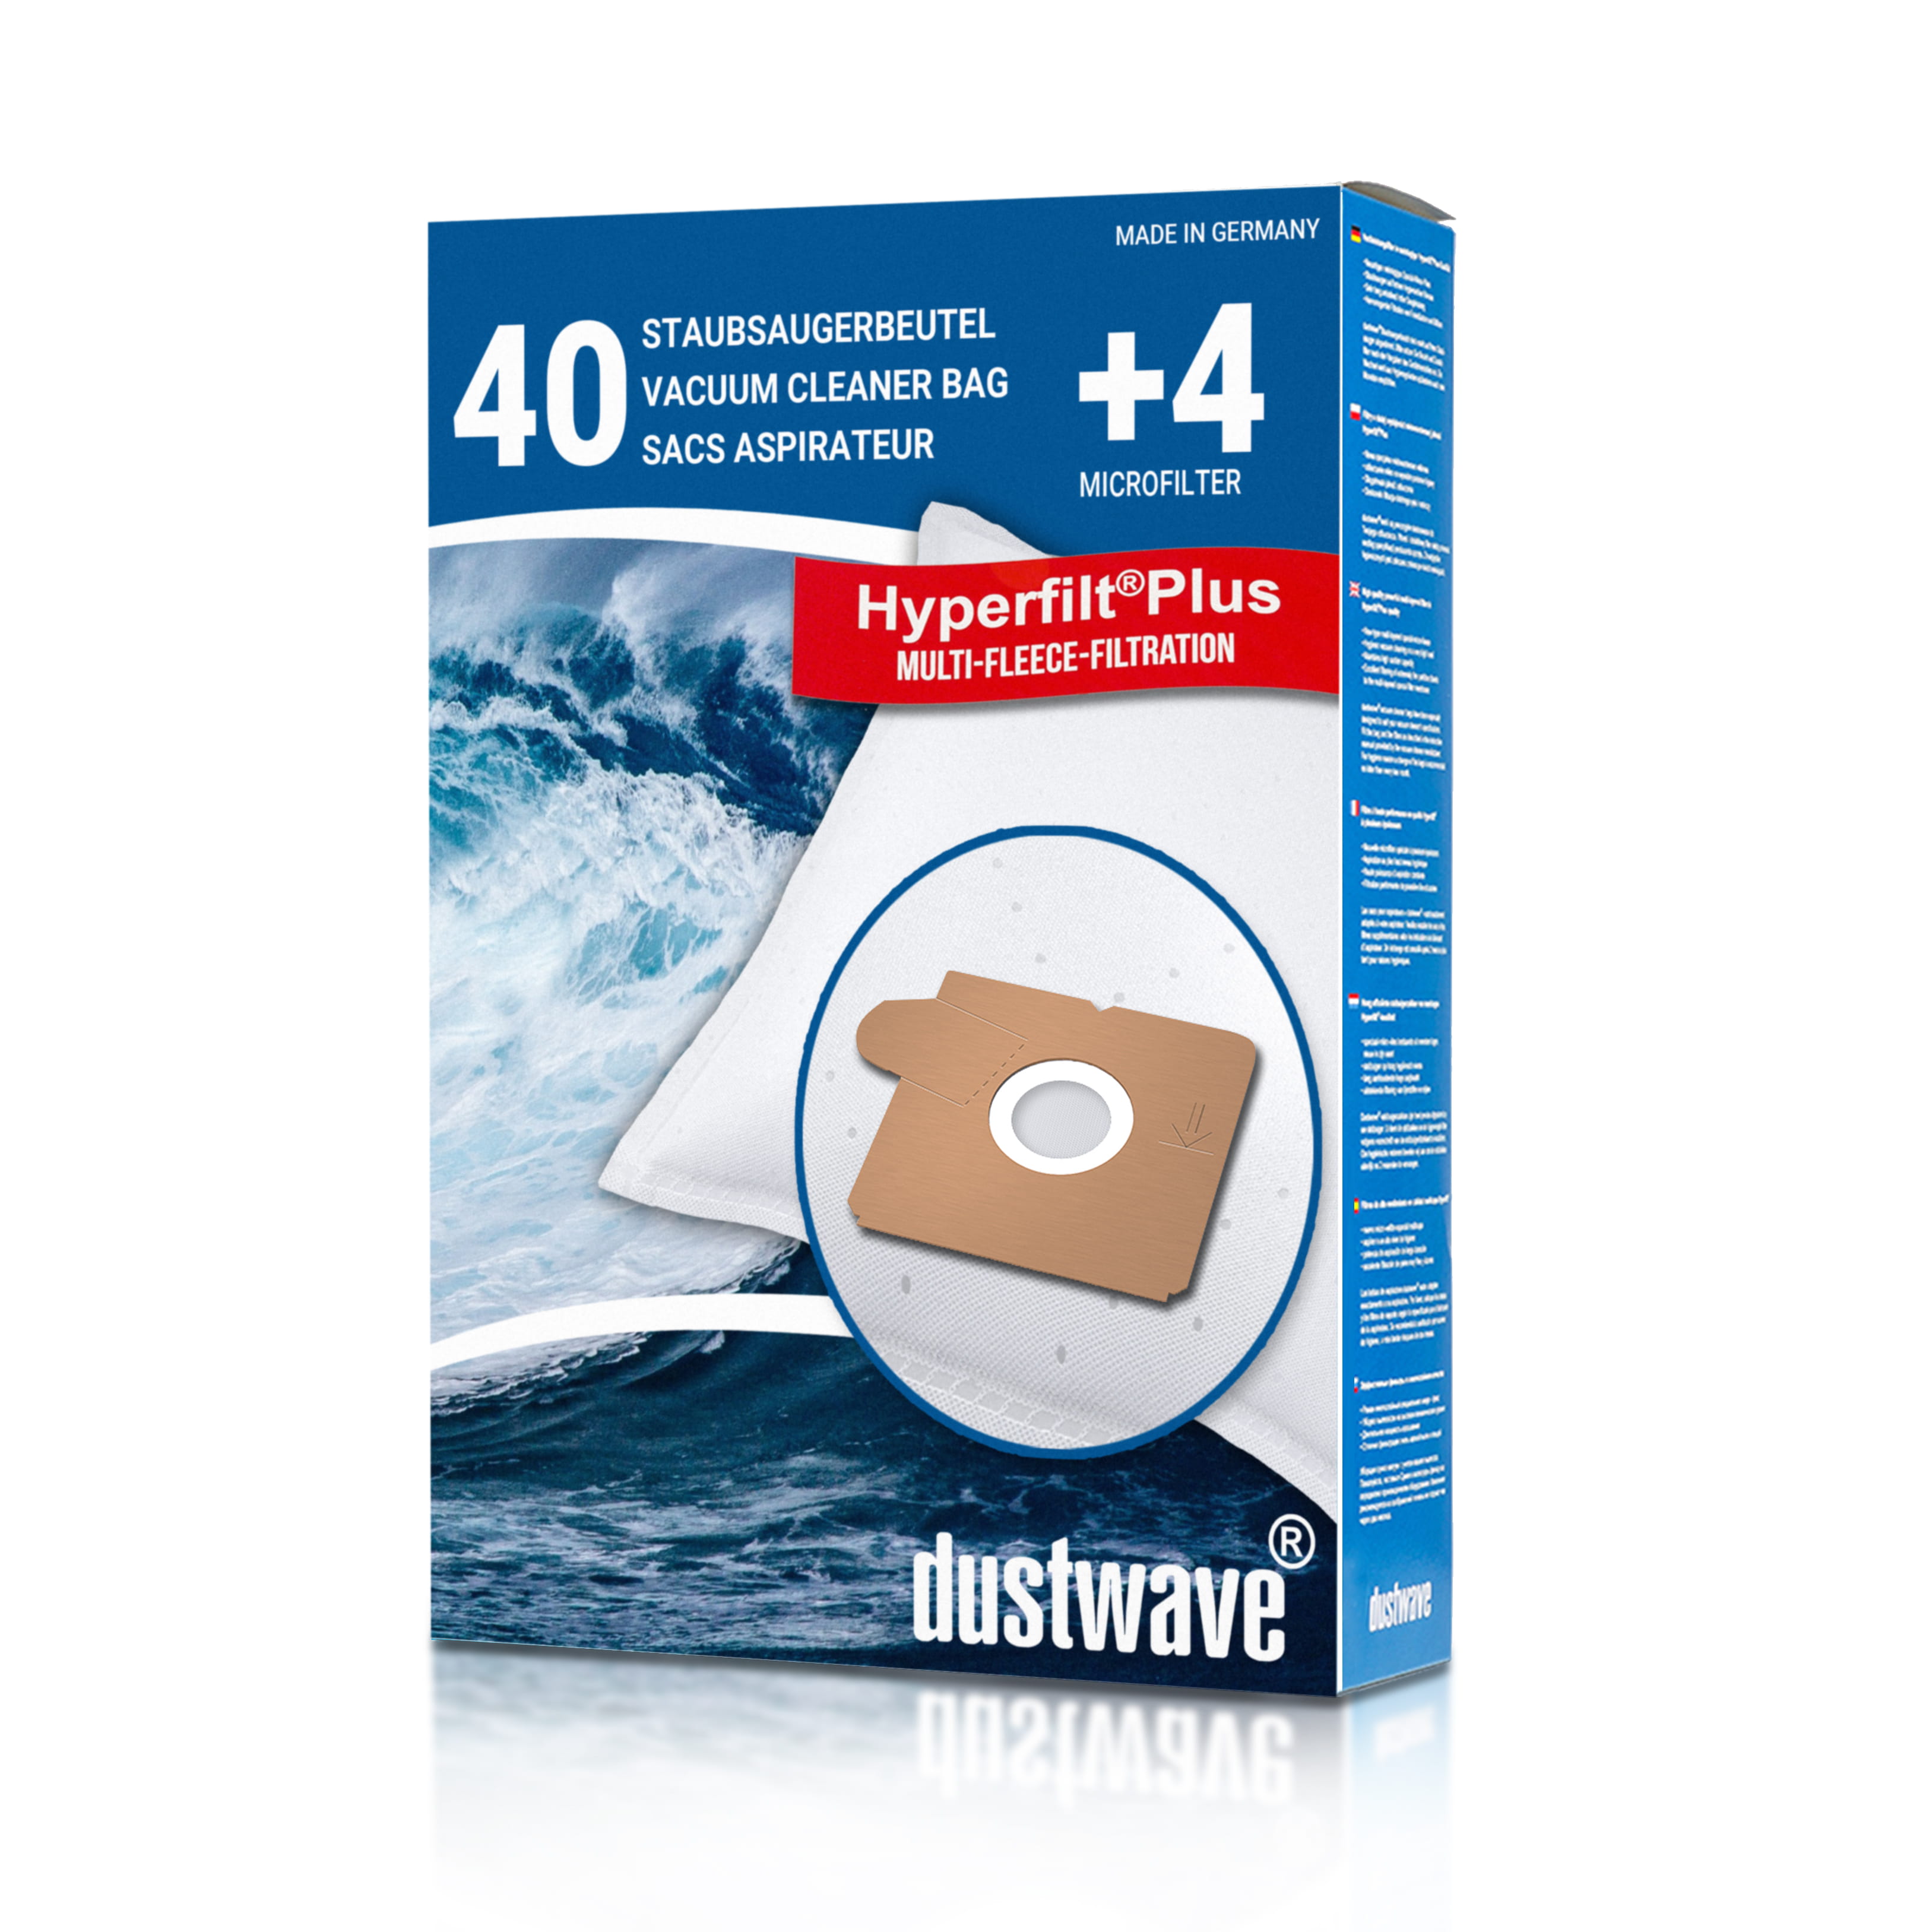 Dustwave® 40 Staubsaugerbeutel für SWIRL A 06 - hocheffizient, mehrlagiges Mikrovlies mit Hygieneverschluss - Made in Germany